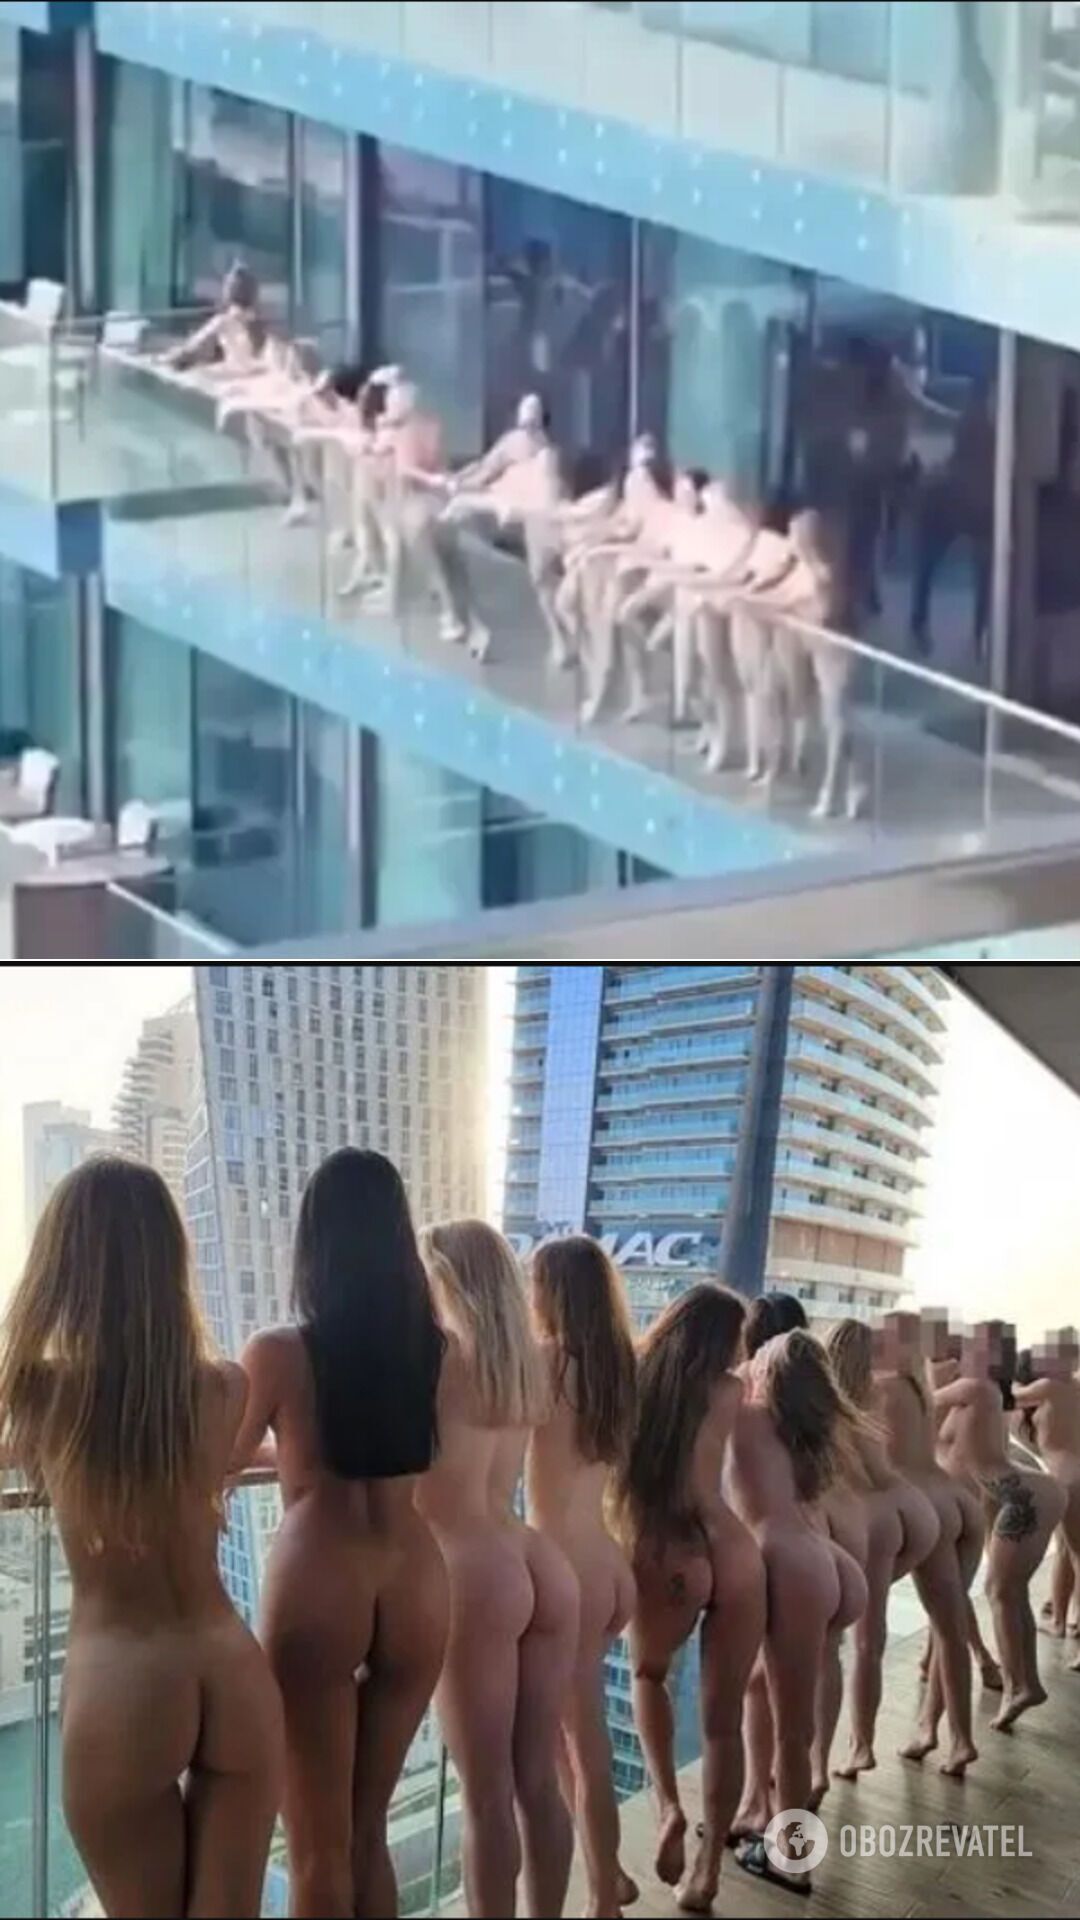 Моделі, яких заарештували в Дубаї за голу зйомку